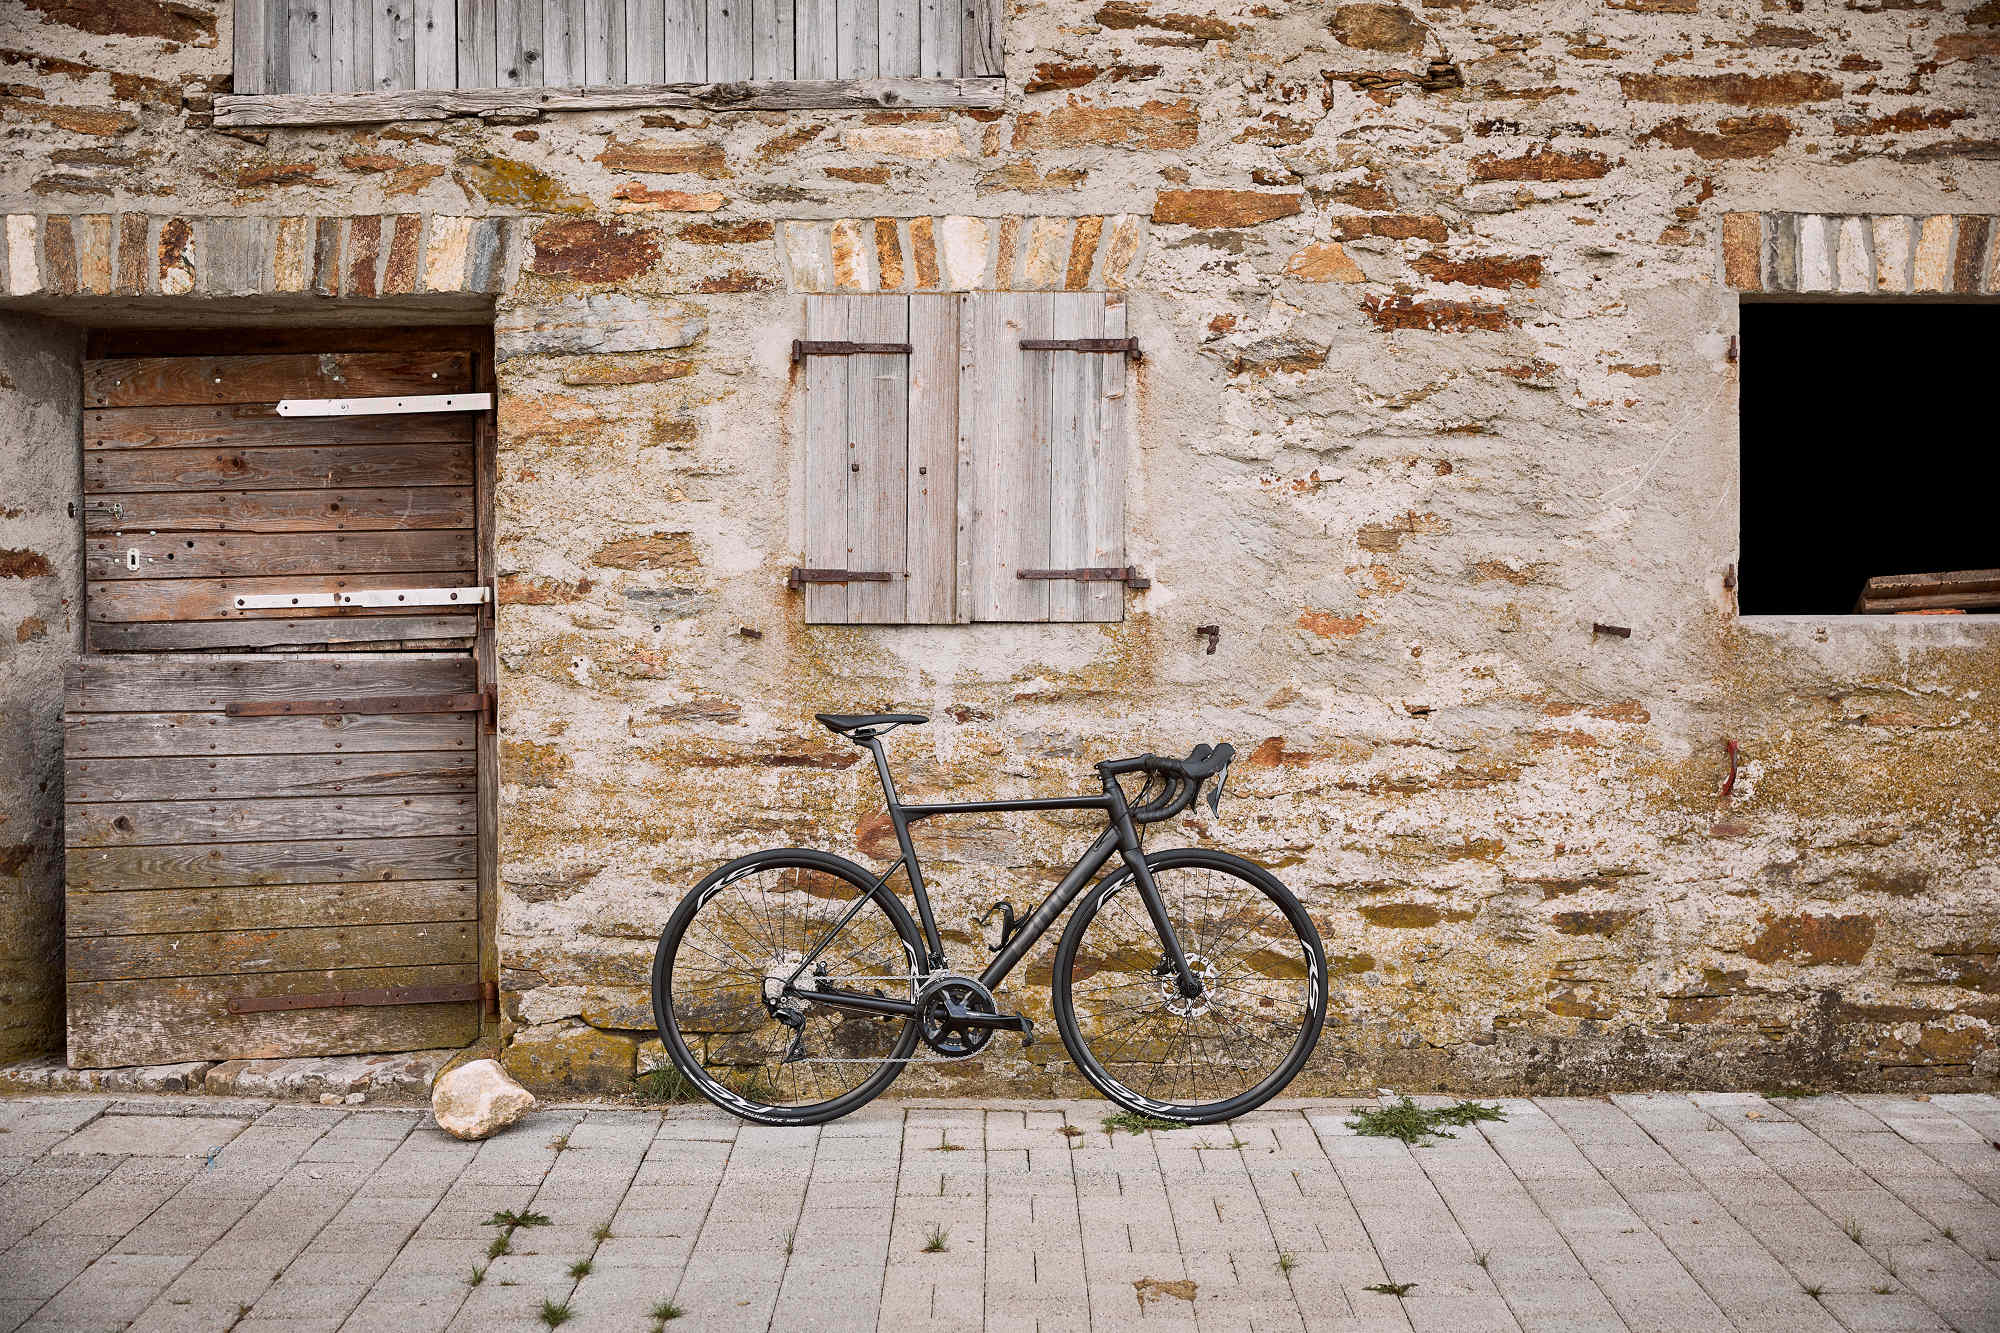 Nowa seria rowerów szosowych BMC Teammachine ALR